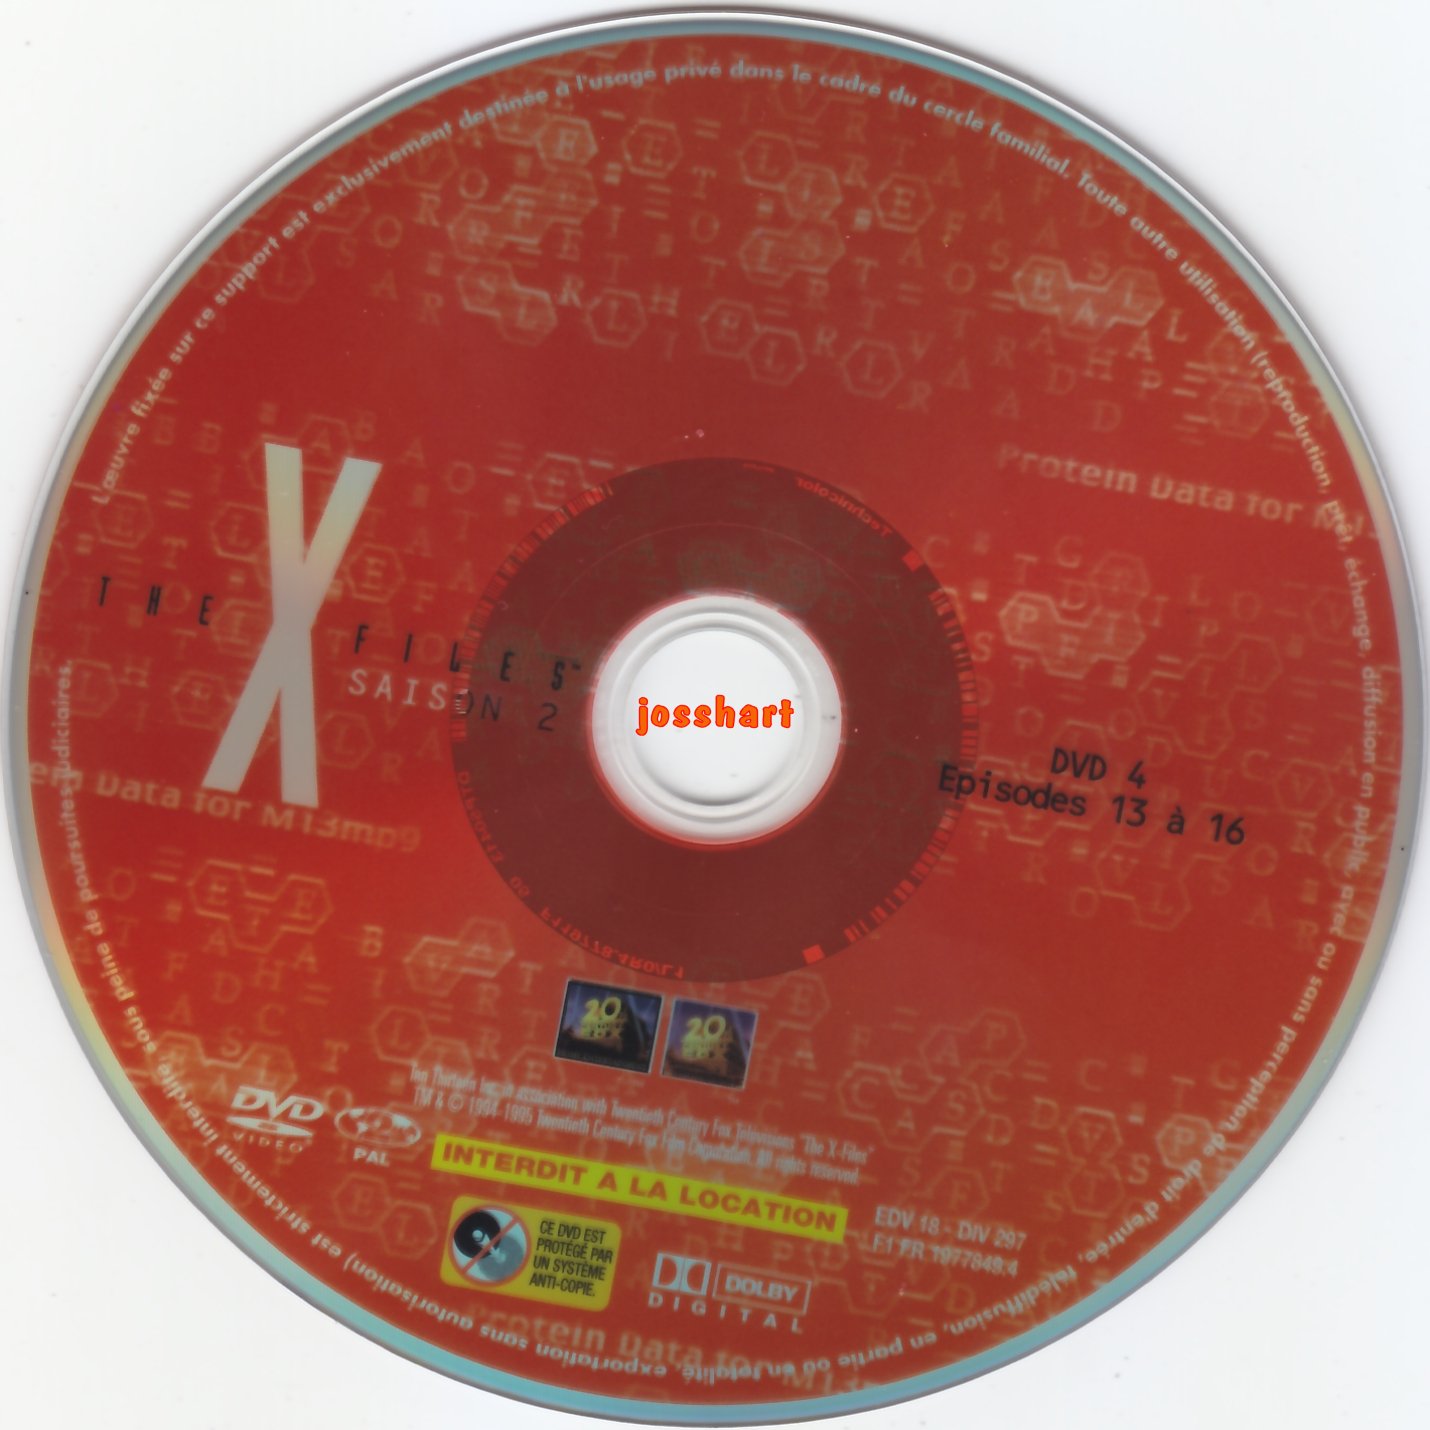 The X Files Saison 2 DVD 4 v2